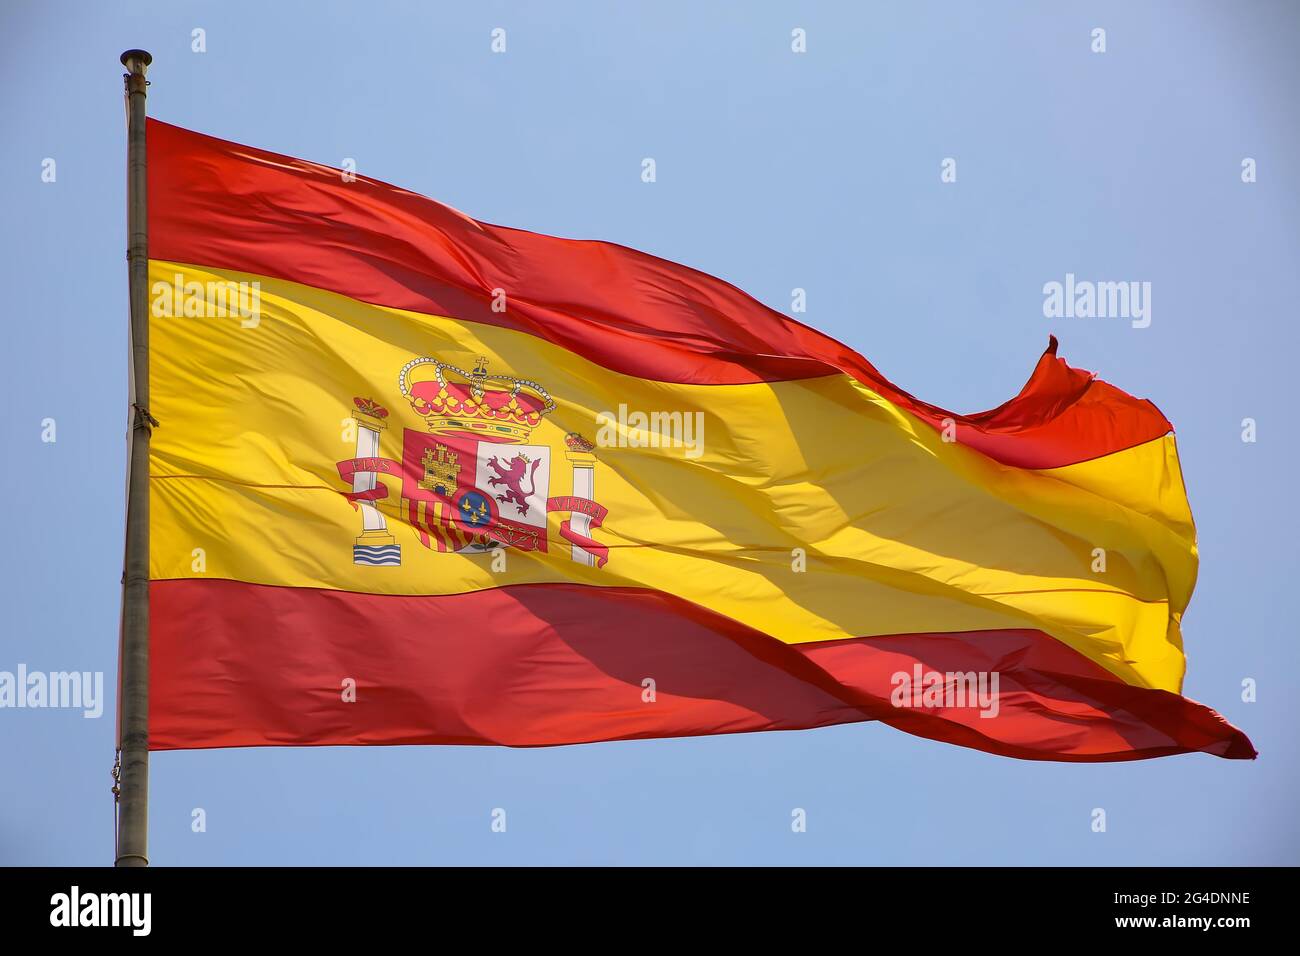 Gros plan du drapeau de l'Espagne. Utilisé pour représenter le pays espagnol avec un emblème et des bandes horizontales rouges et jaunes. Banque D'Images